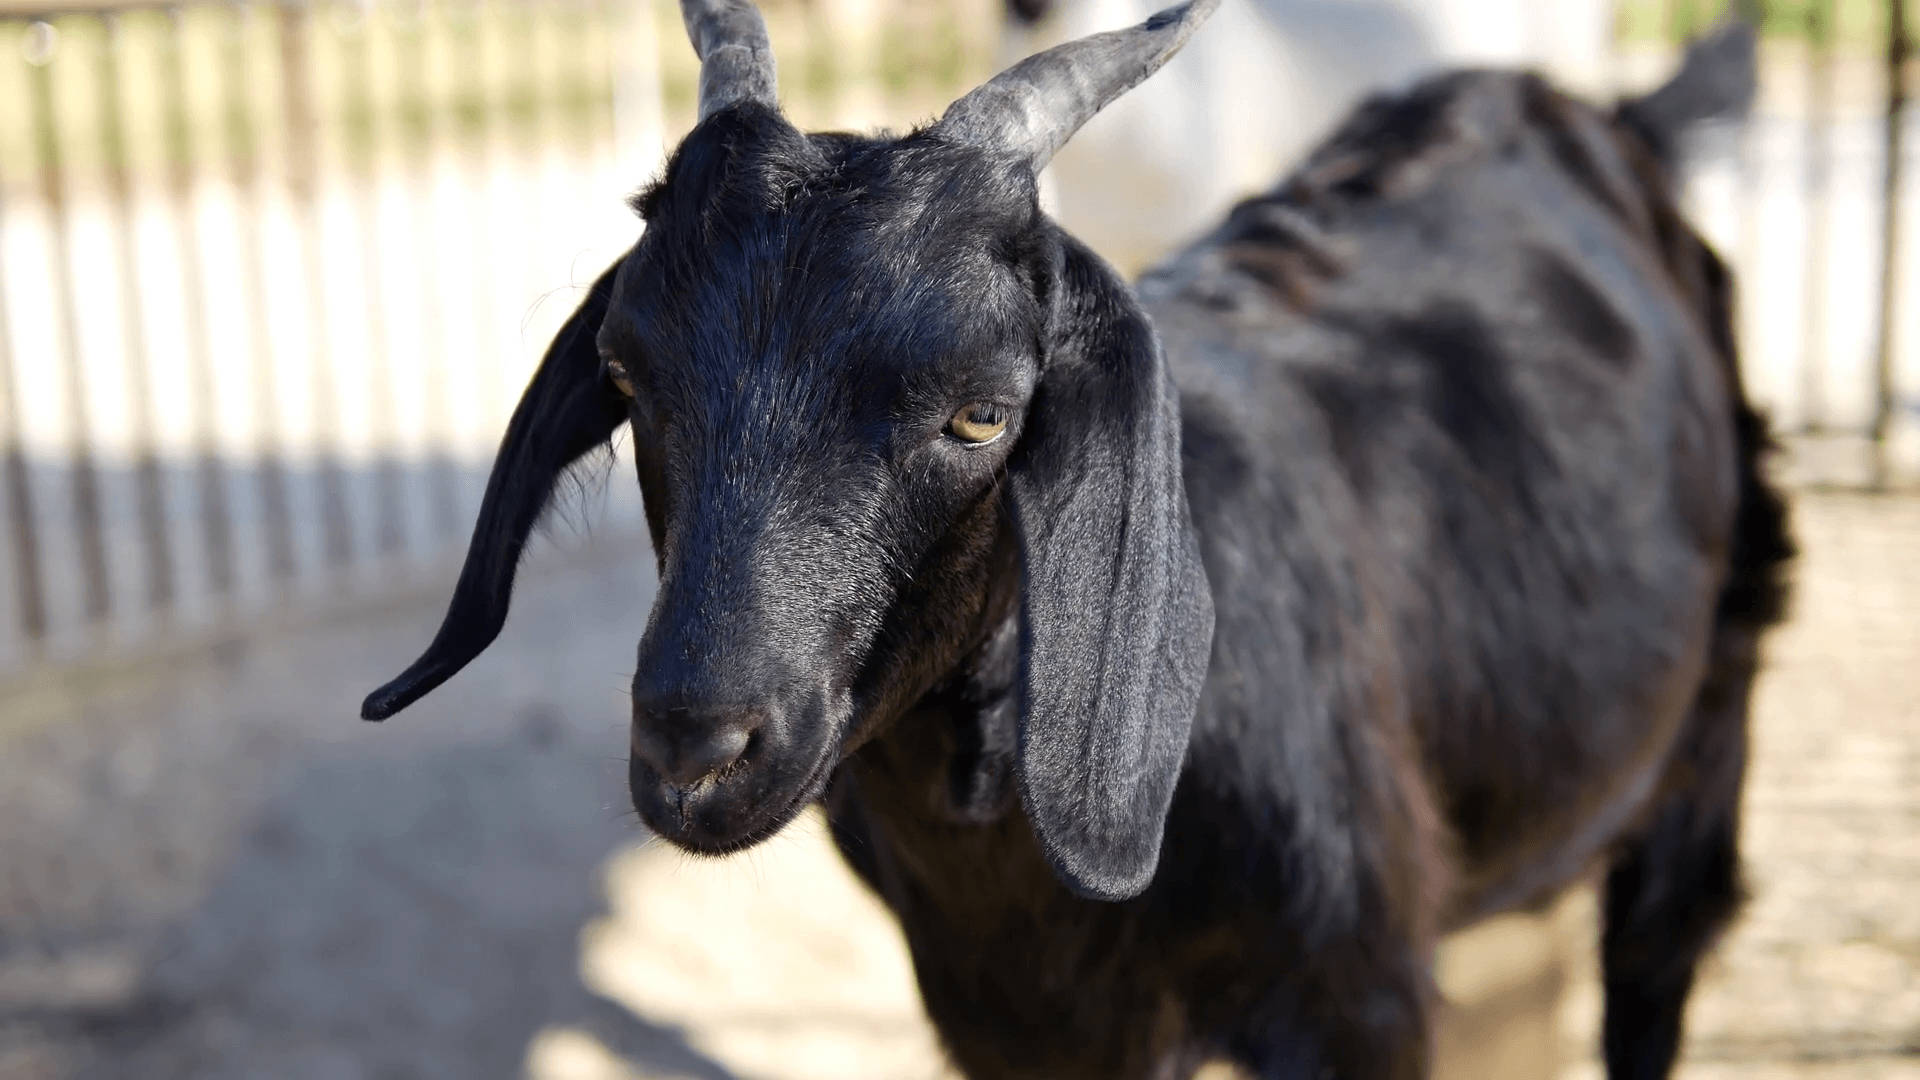 Short-horned Black Goat